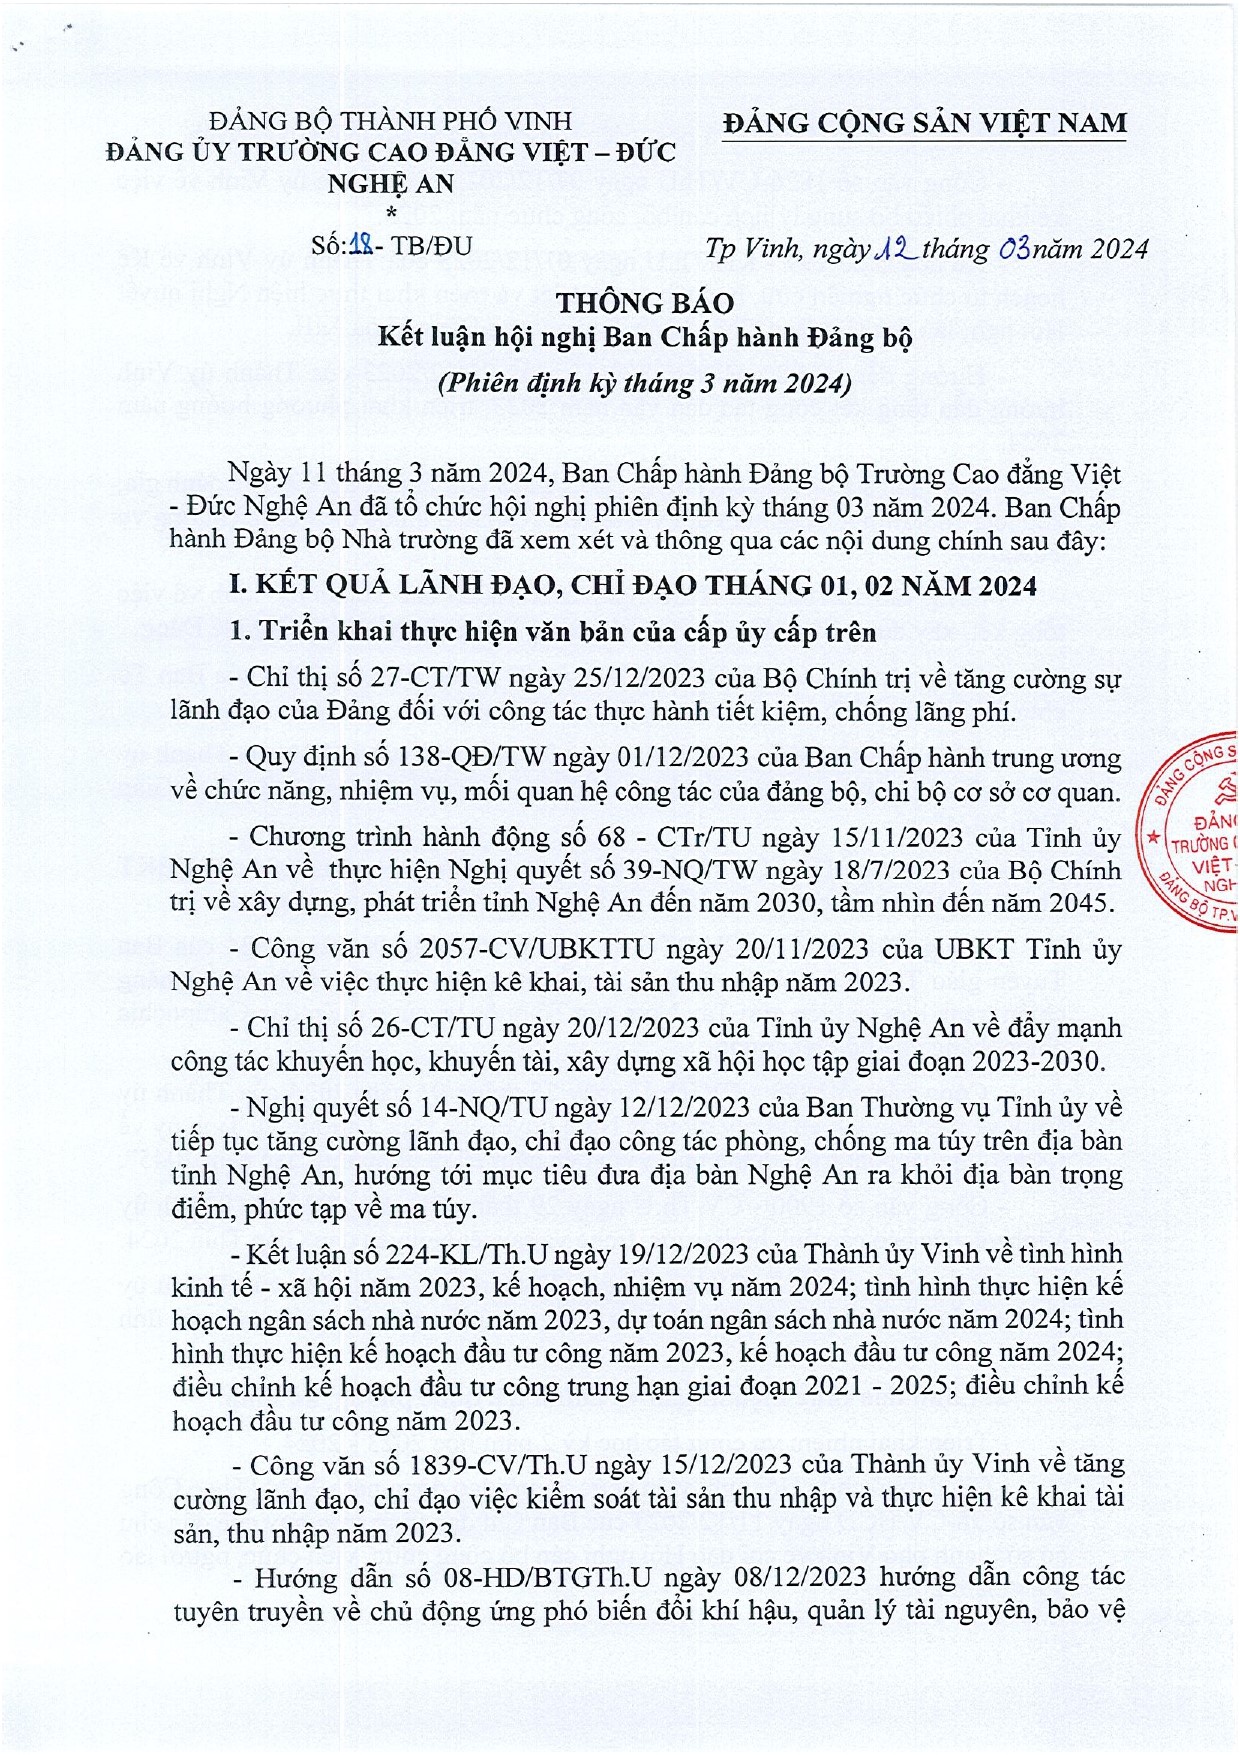 Thông báo số 18-TB/ĐU của Đảng ủy Trường Cao đẳng Việt - Đức Nghệ An về Kết luận Hội nghị Ban Chấp hành Đảng bộ, phiên định kỳ tháng 3 năm 2024